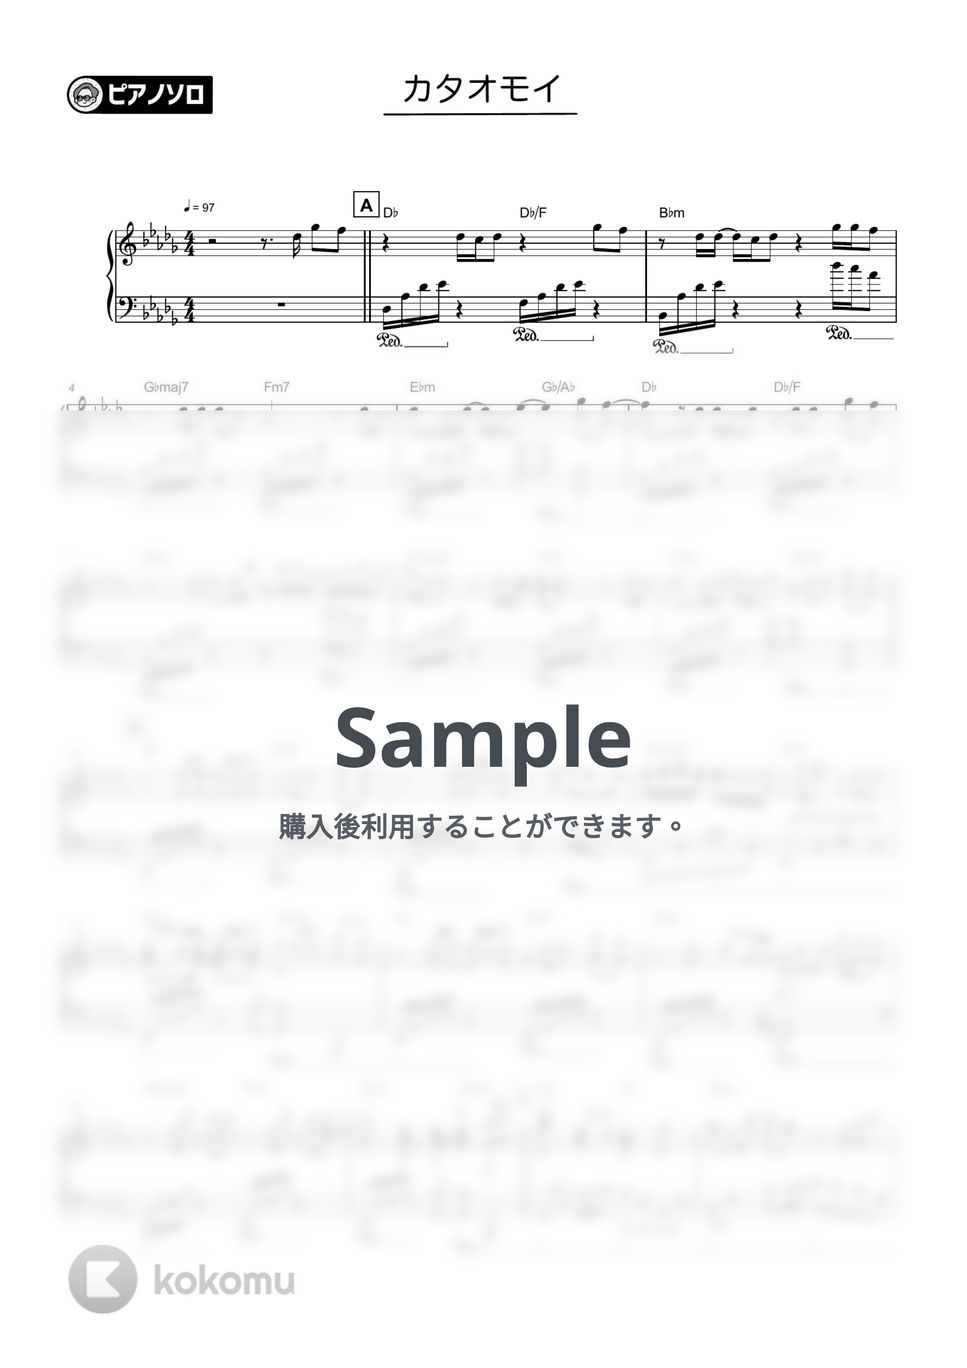 Aimer - カタオモイ by シータピアノ